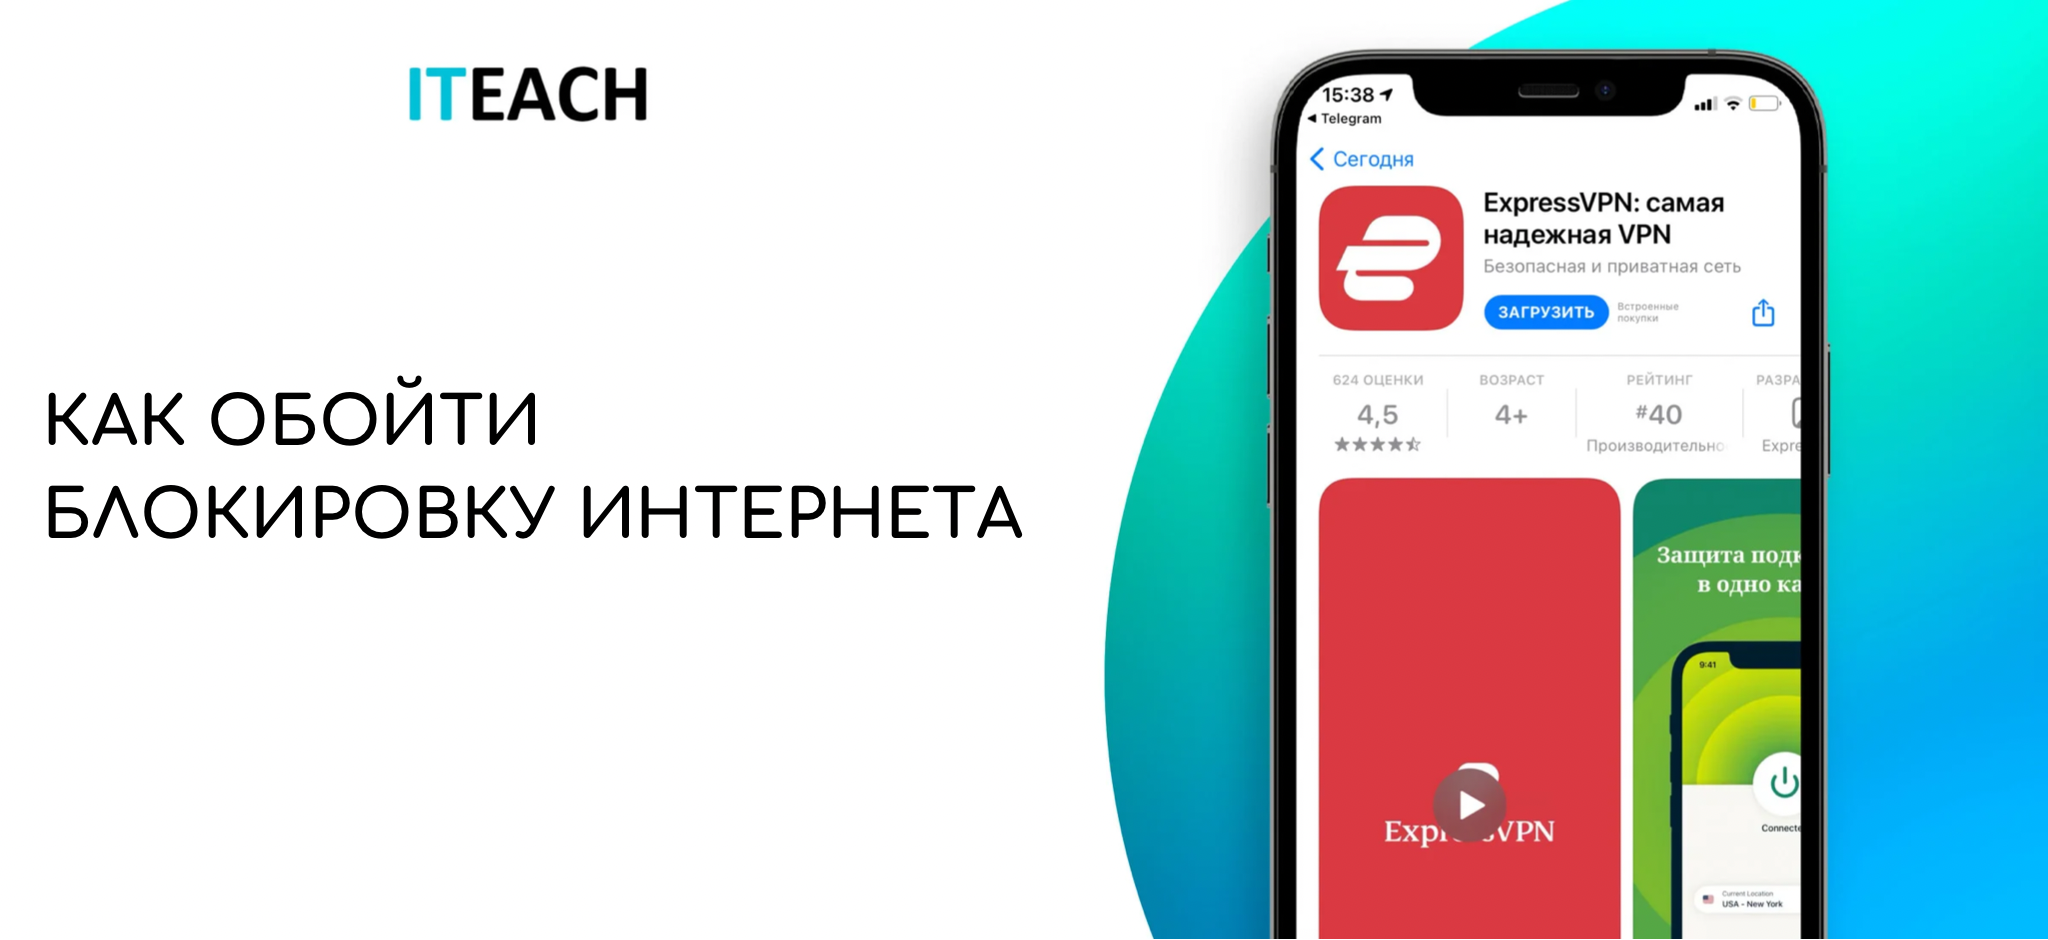 Как обойти блокировку телеграмма в казахстане на андроид фото 21